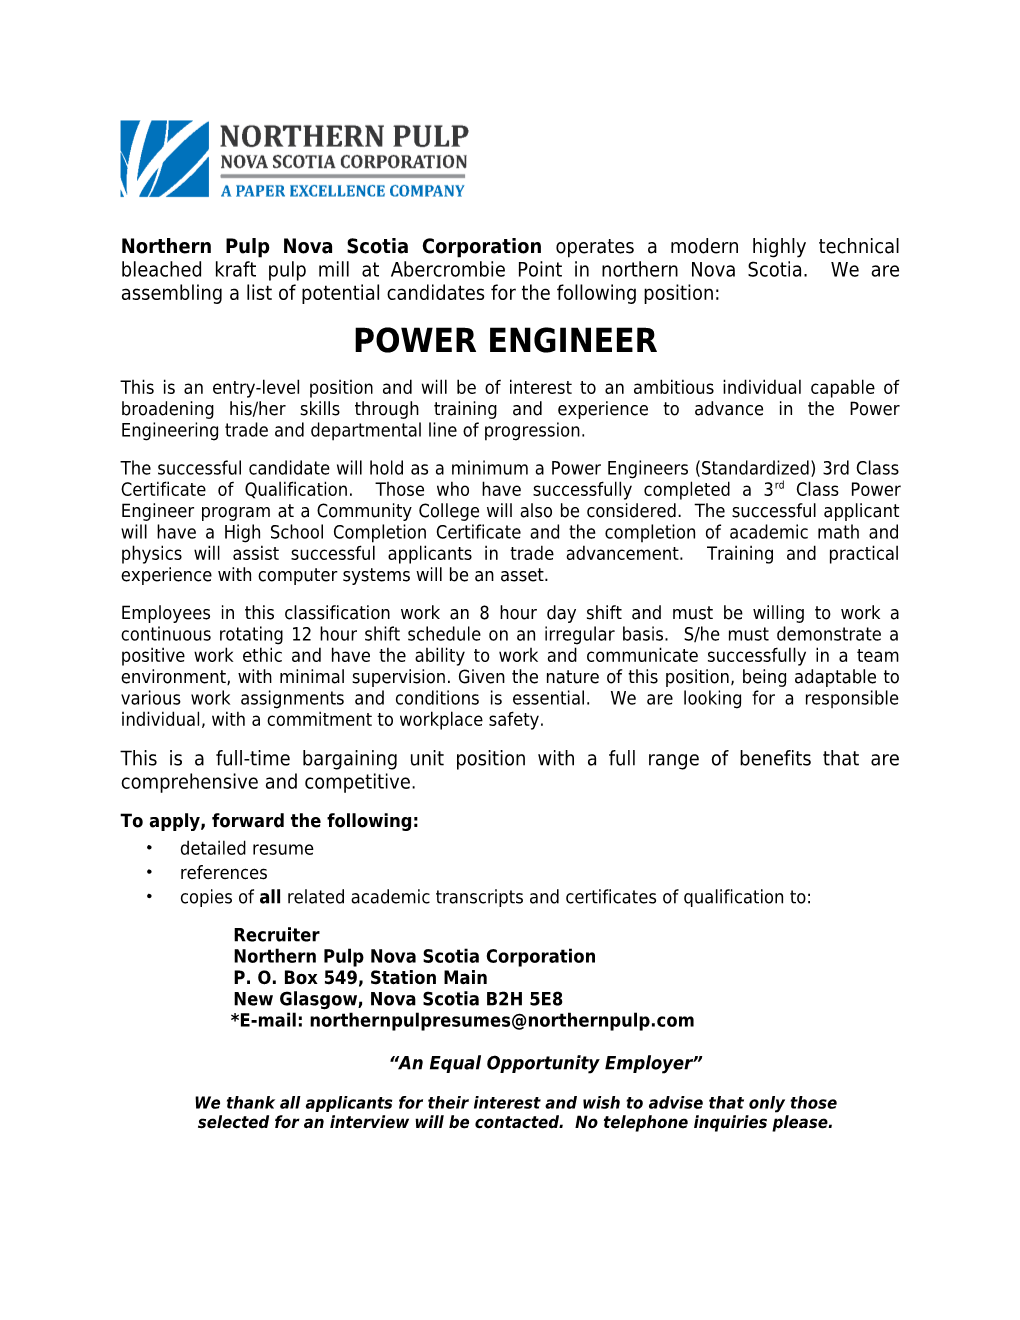 Power Engineer